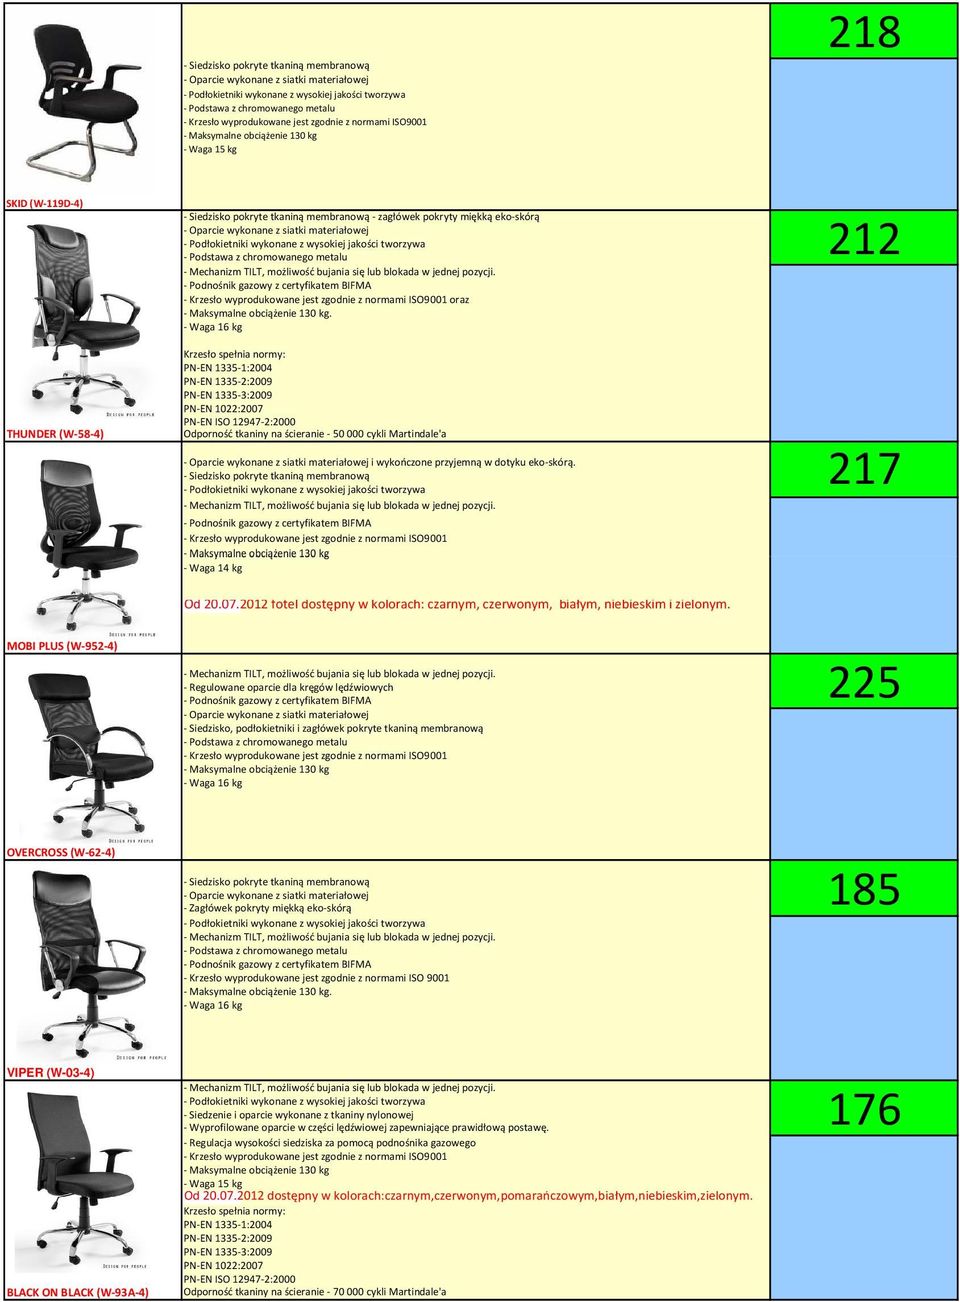 - Siedzisko pokryte tkaniną membranową - Waga 14 kg 212 217 Od 20.07.2012 fotel dostępny w kolorach: czarnym, czerwonym, białym, niebieskim i zielonym.